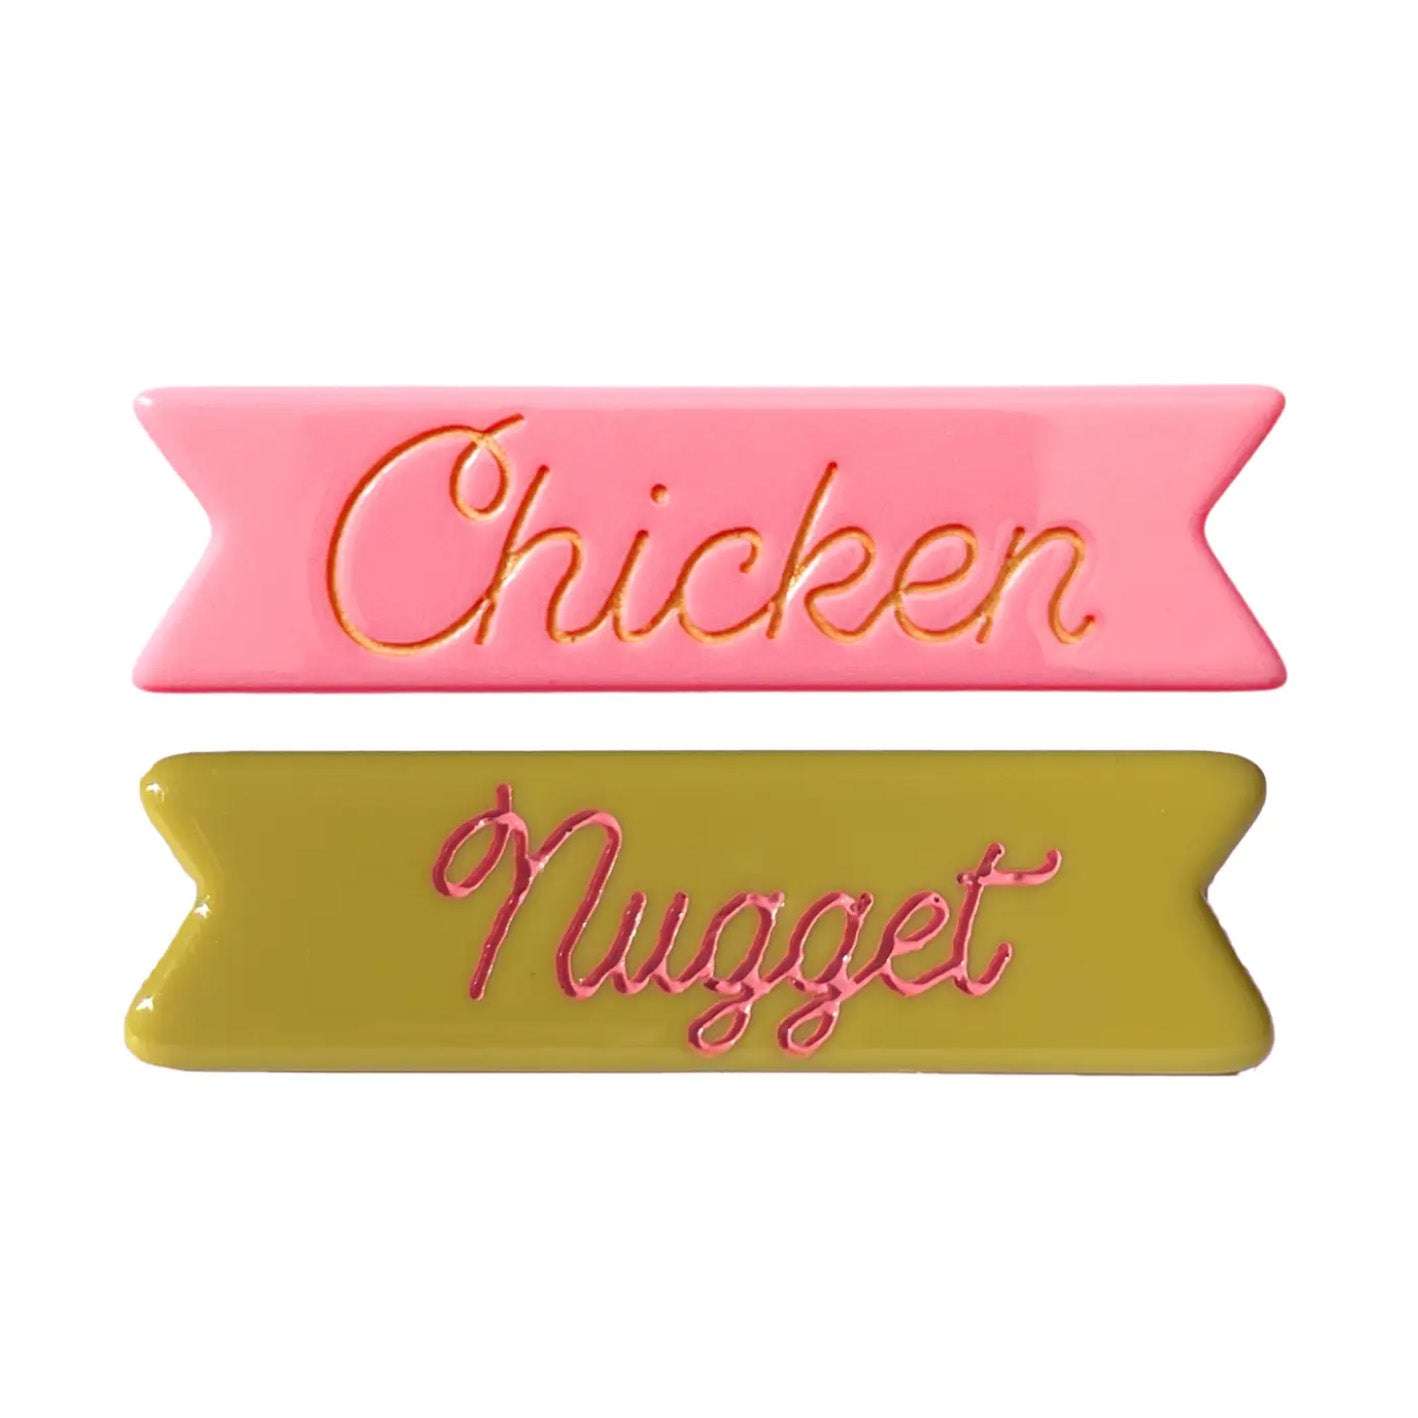 chicken nugget hair clips set